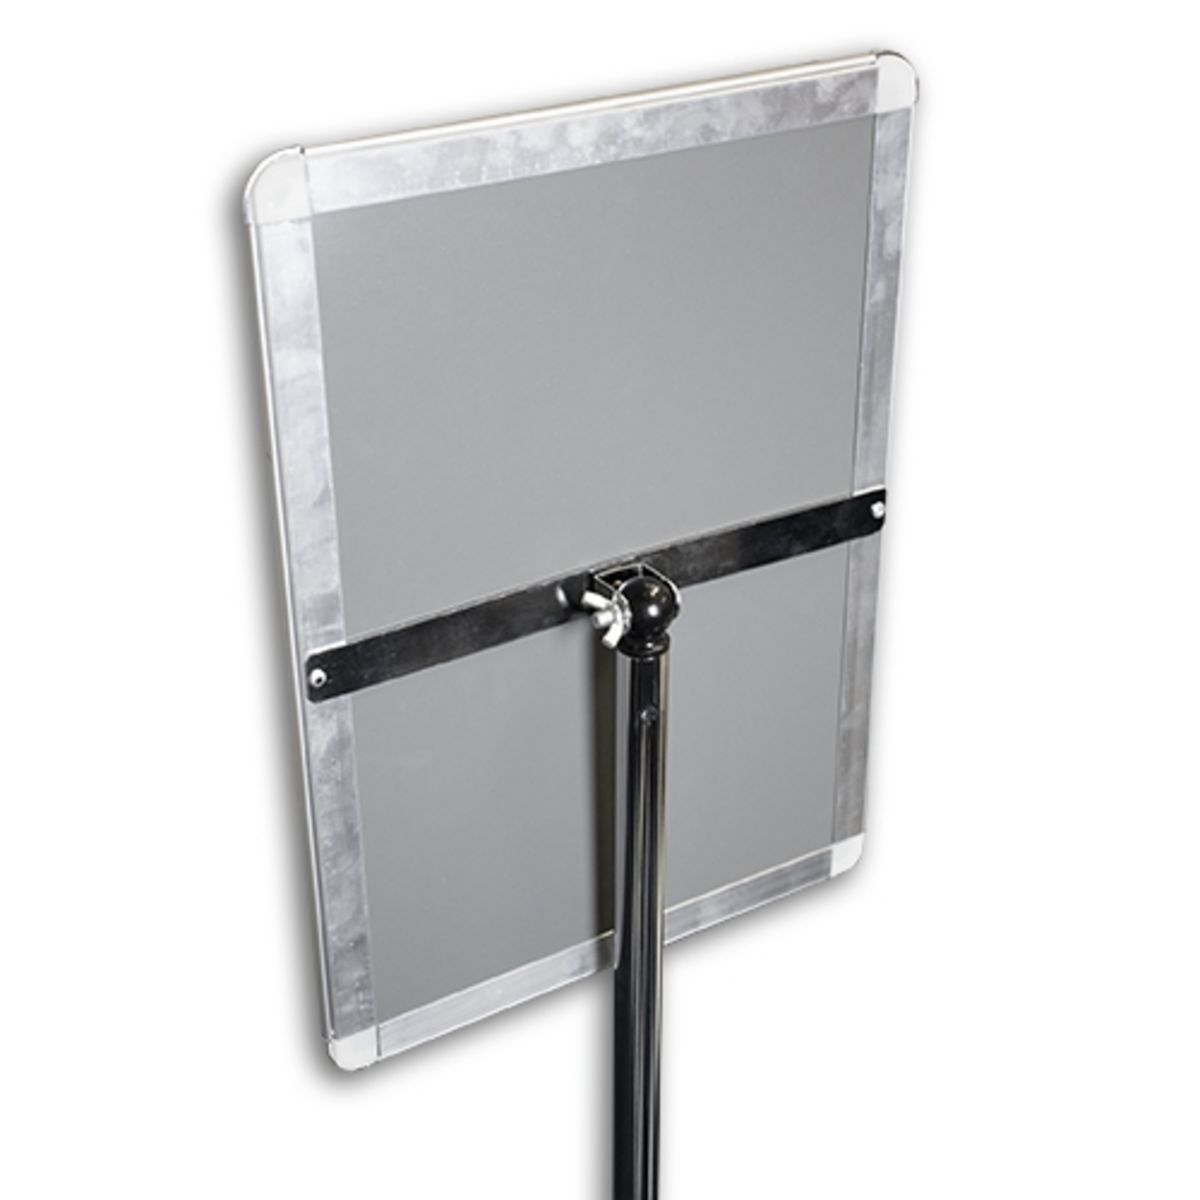 Freestanding telescopic pole snap frame poster holder back.jpg